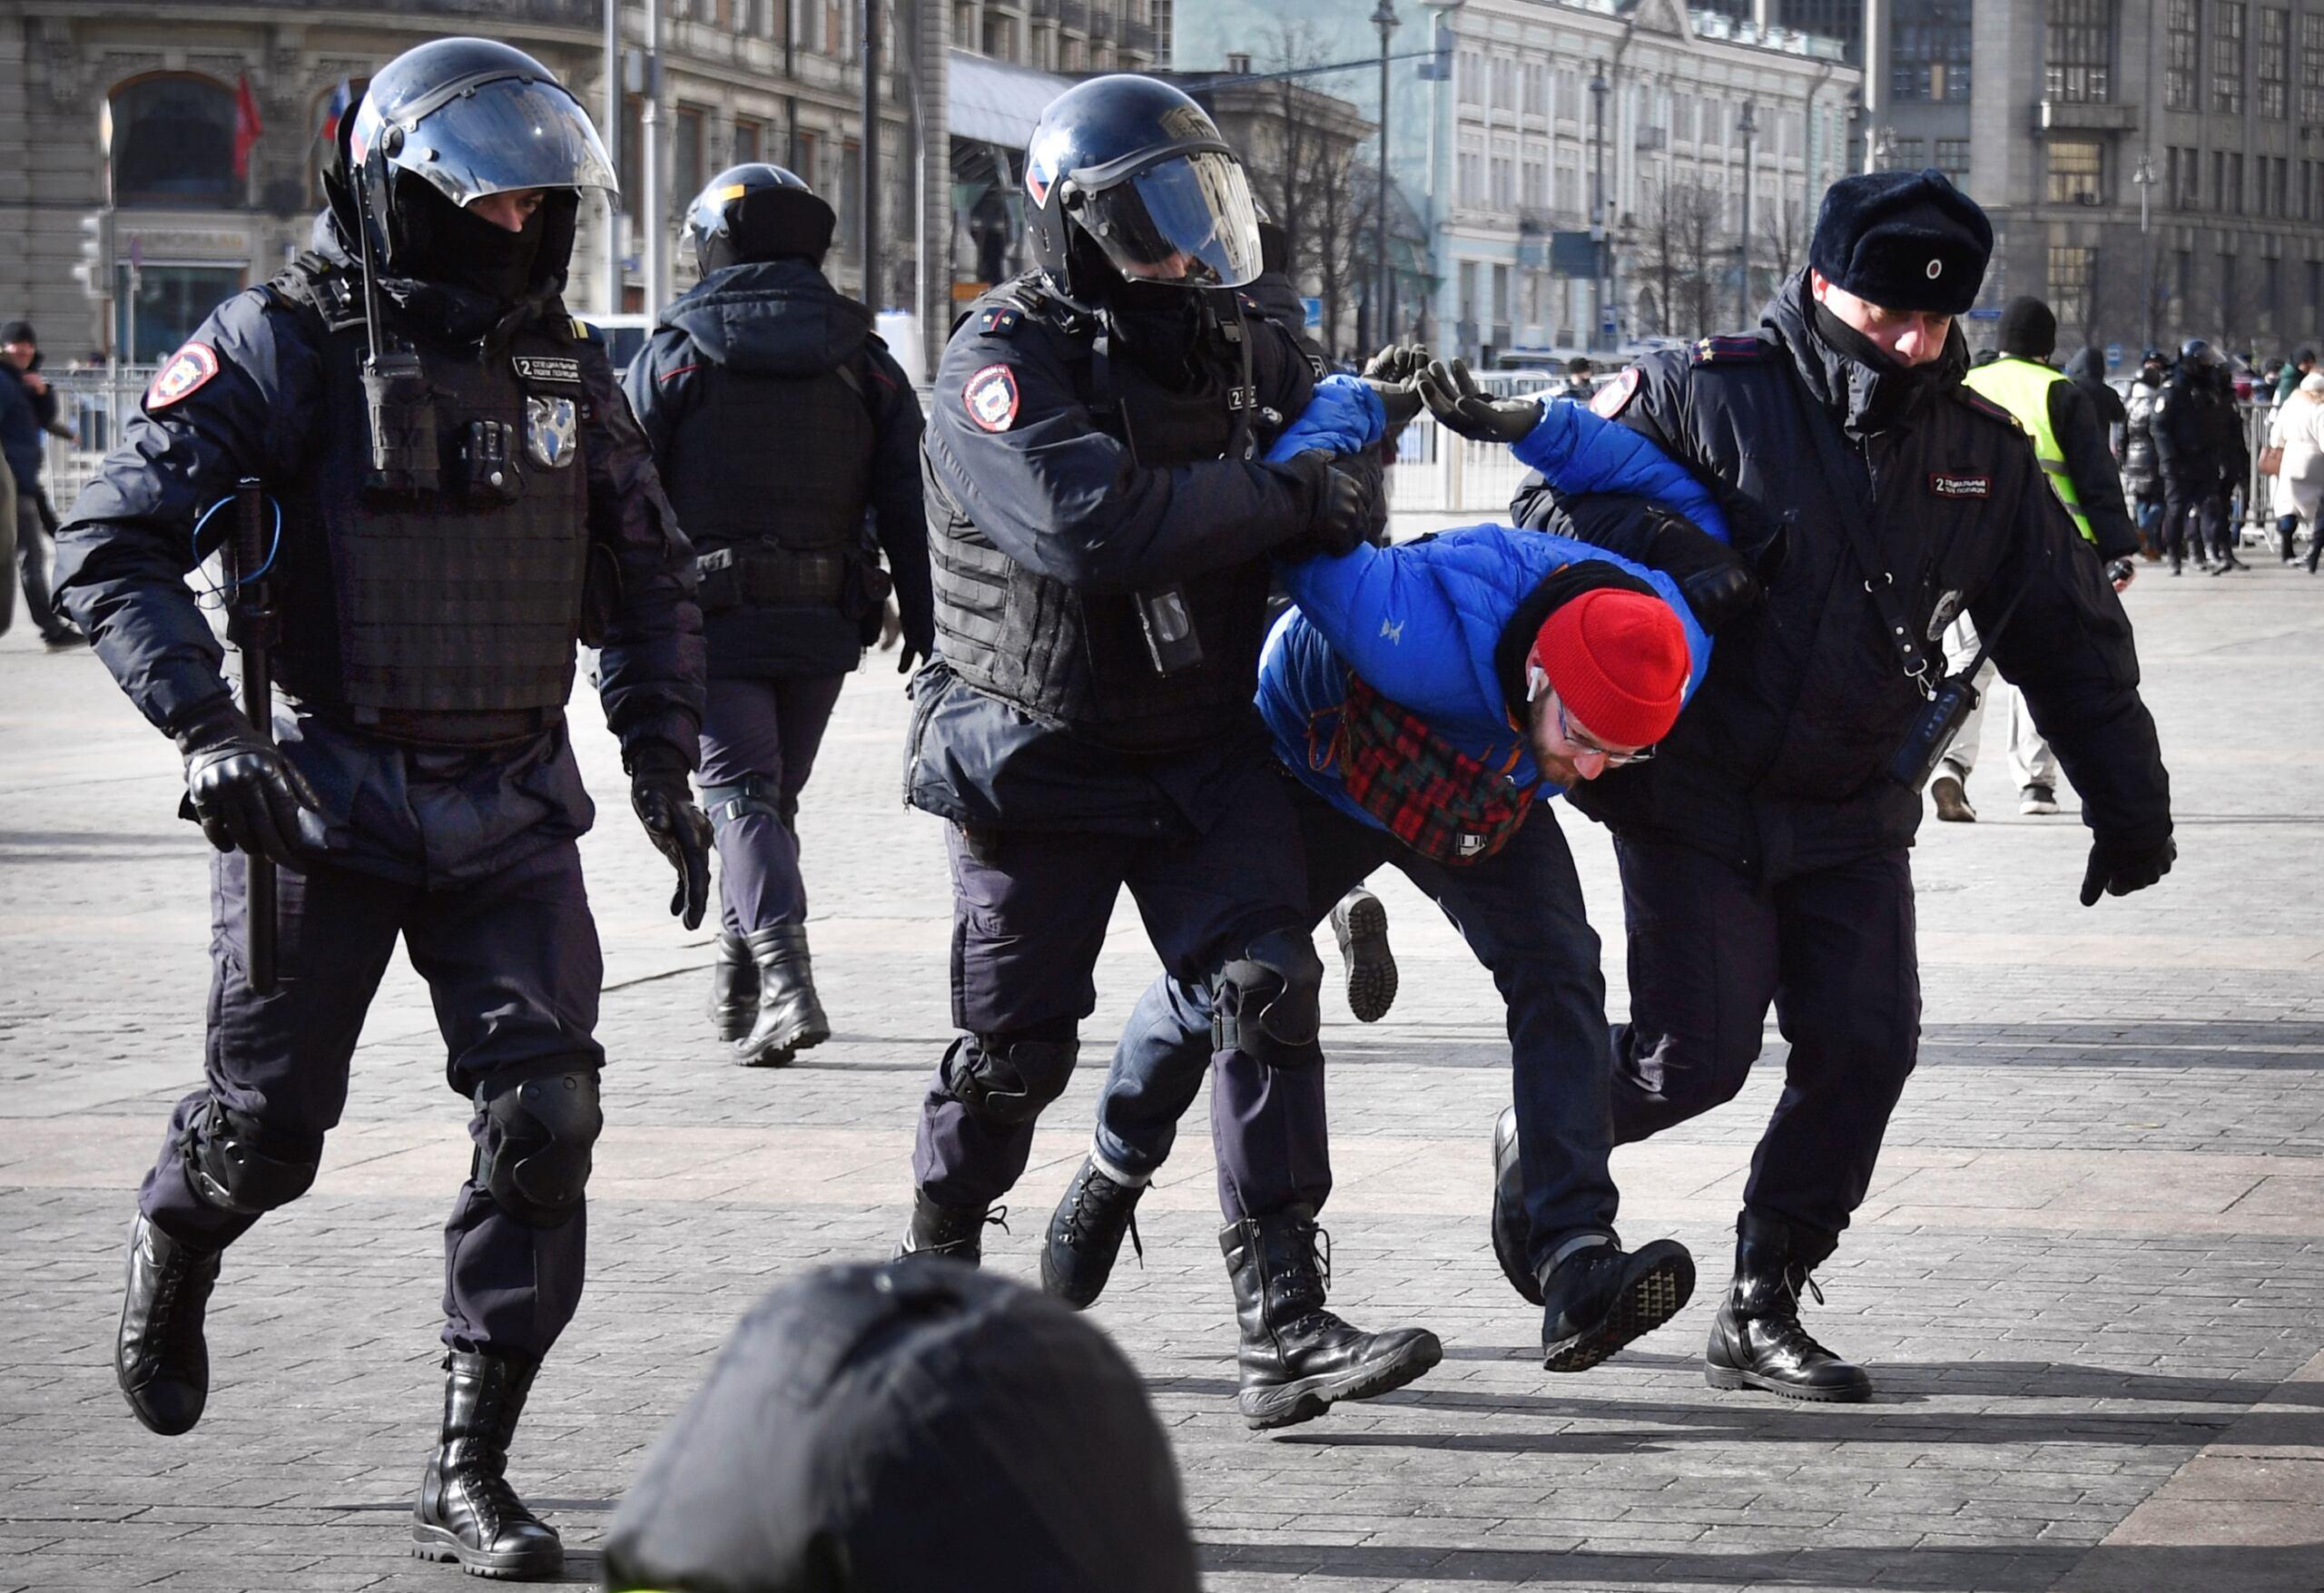 „Rosjanom jest potrzebna przynajmniej jedna niezależna redakcja” - mówi redaktor naczelny portalu Meduza. Apeluje do międzynarodowej opinii publicznej o pomoc. Na zdjęciu: protest w Moskwie przeciwko inwazji na Ukrainę, 13 marca 2022, fot. AFP